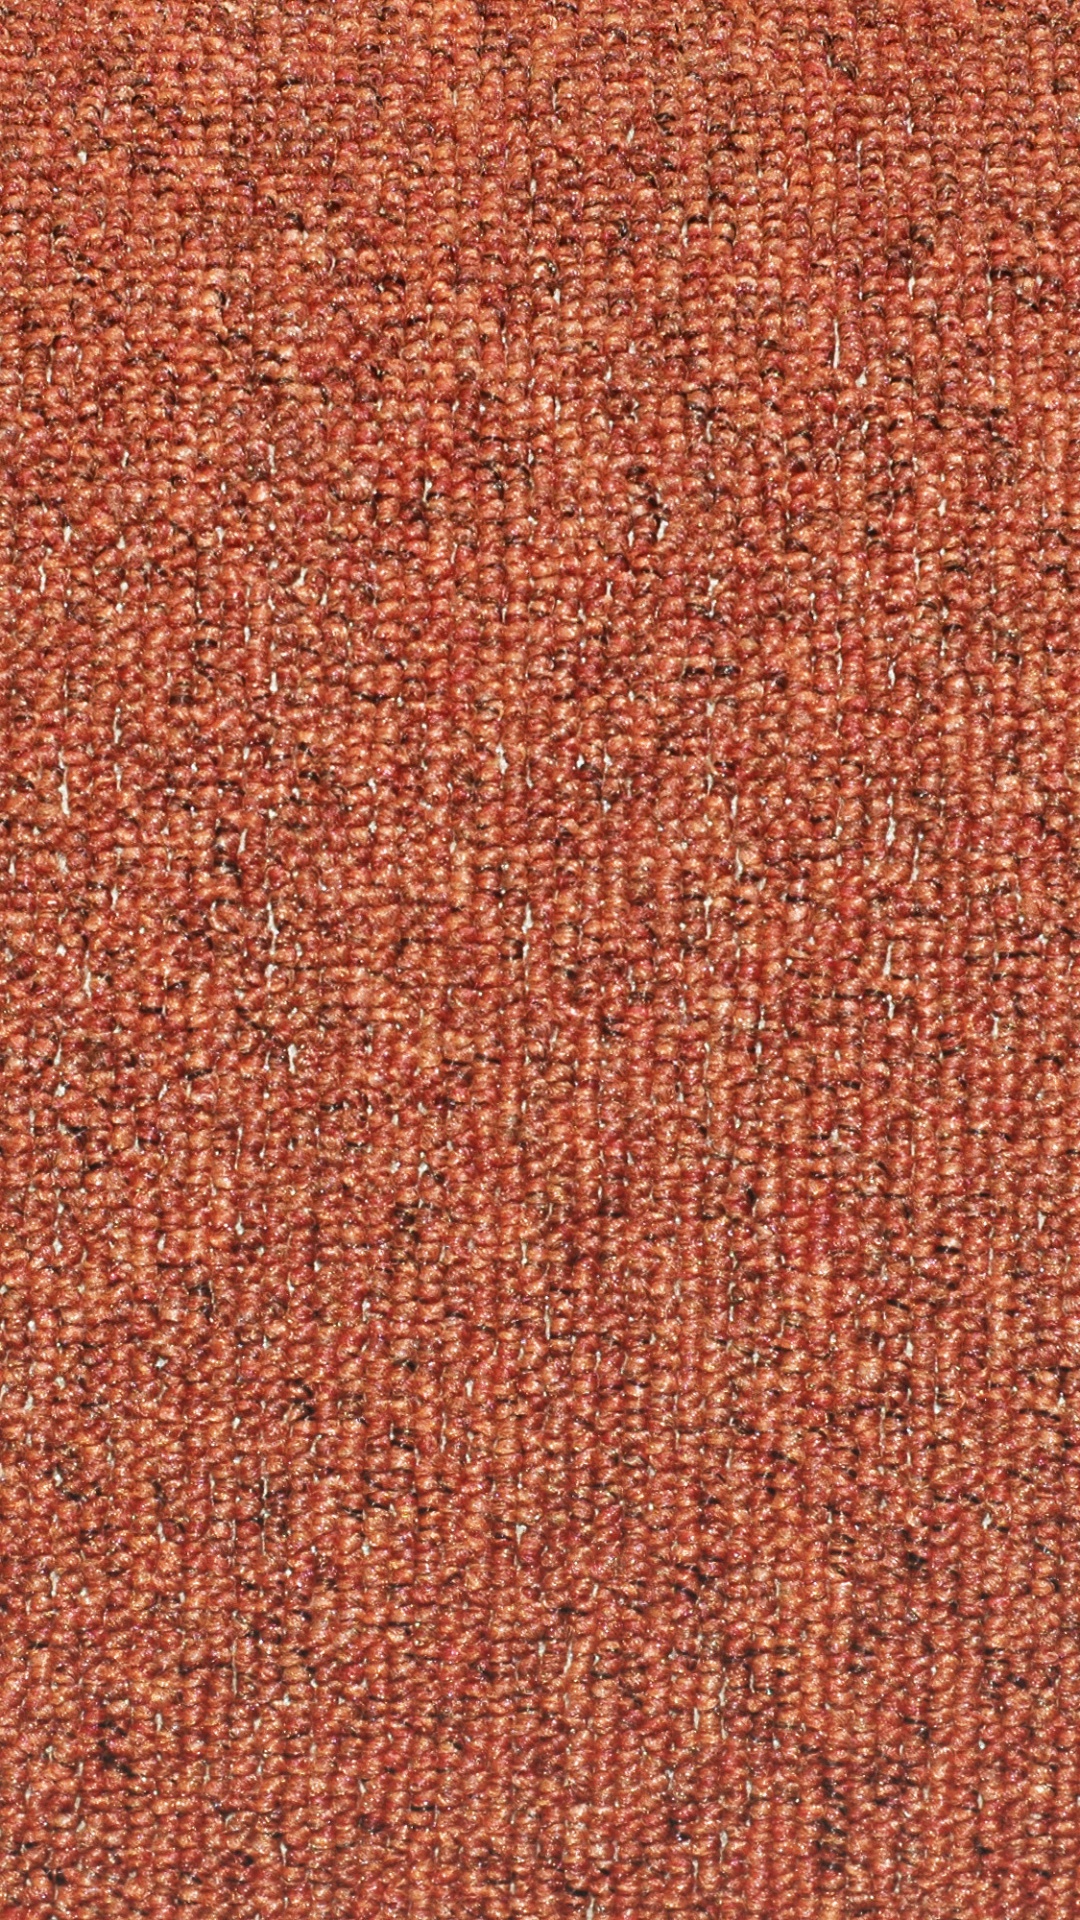 Textil Marrón Con Línea Blanca. Wallpaper in 1080x1920 Resolution